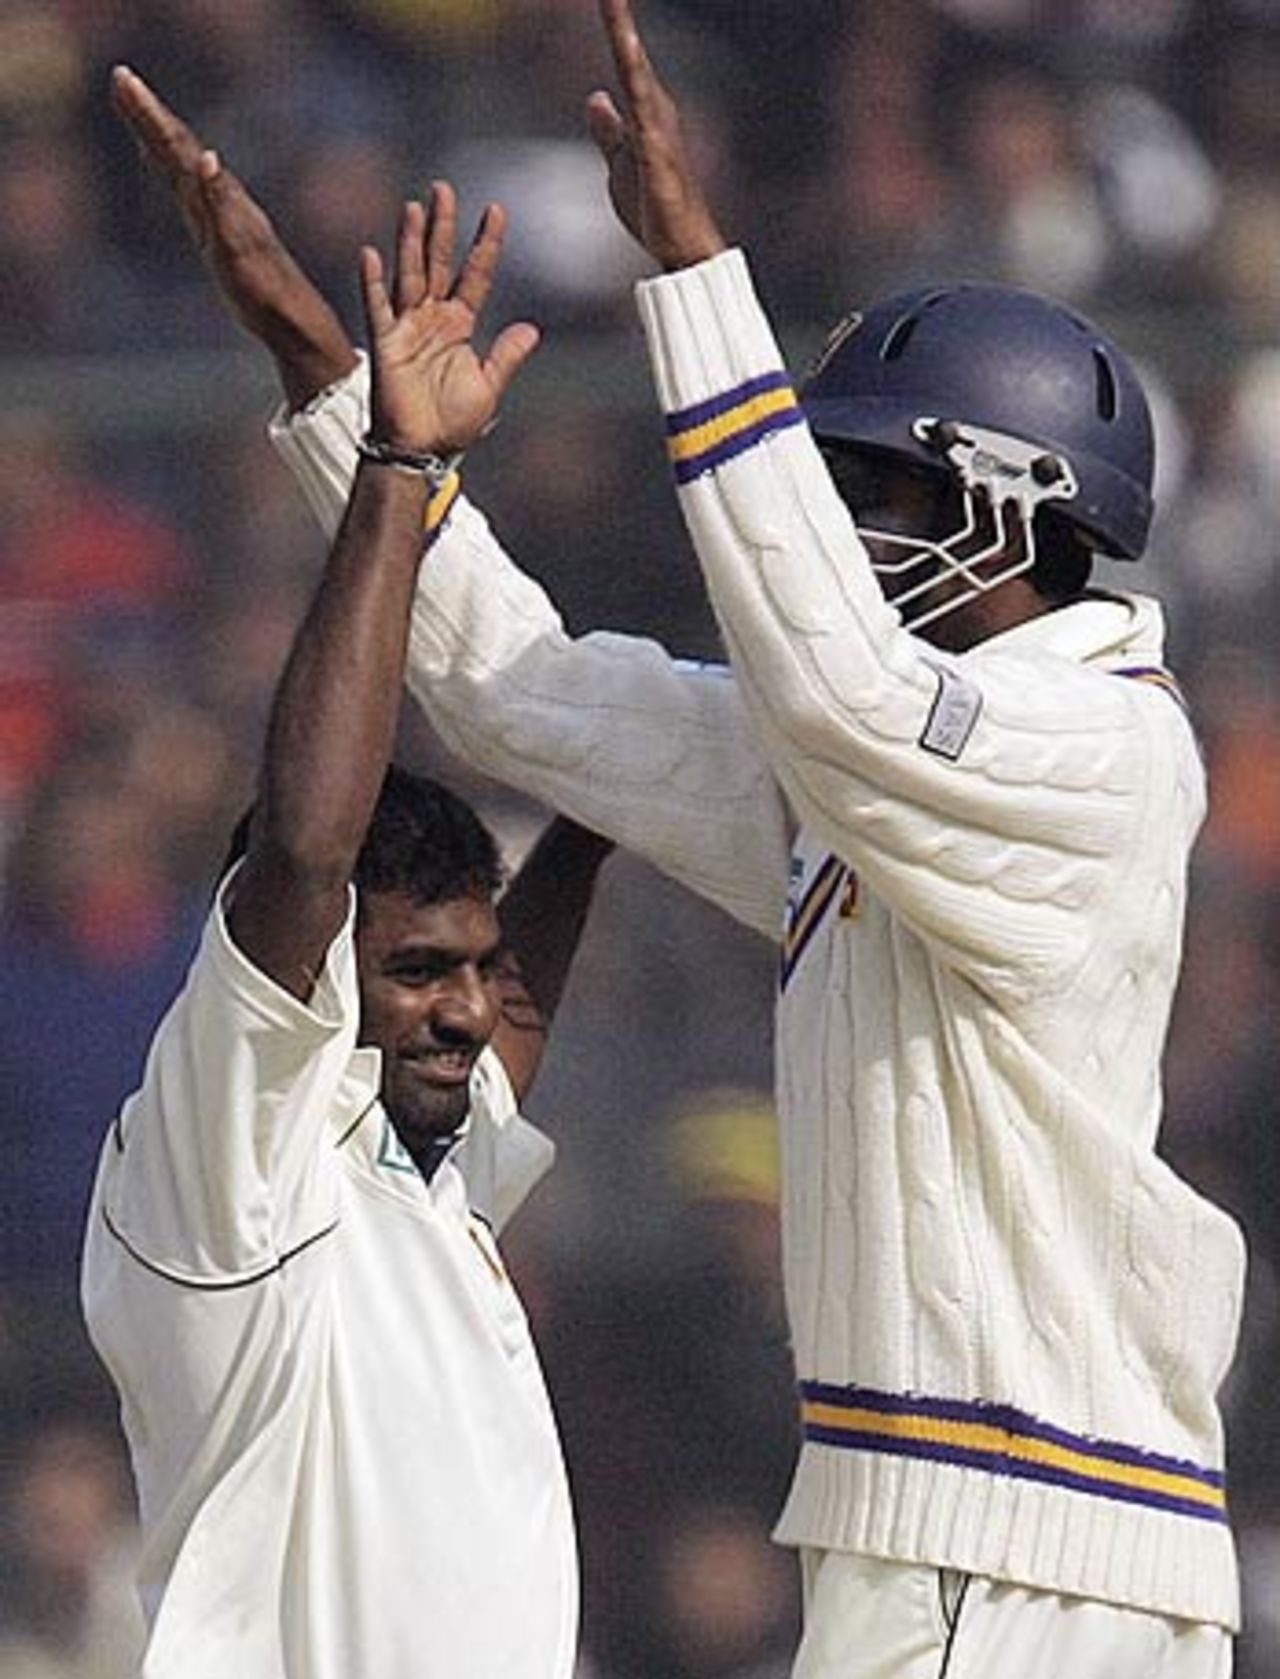 Muttiah Muralitharan and Jehan Mubarak celebrate the dismissal of Sourav Ganguly, India v Sri Lanka, 2nd Test, Delhi, 3rd day, December 13, 2005